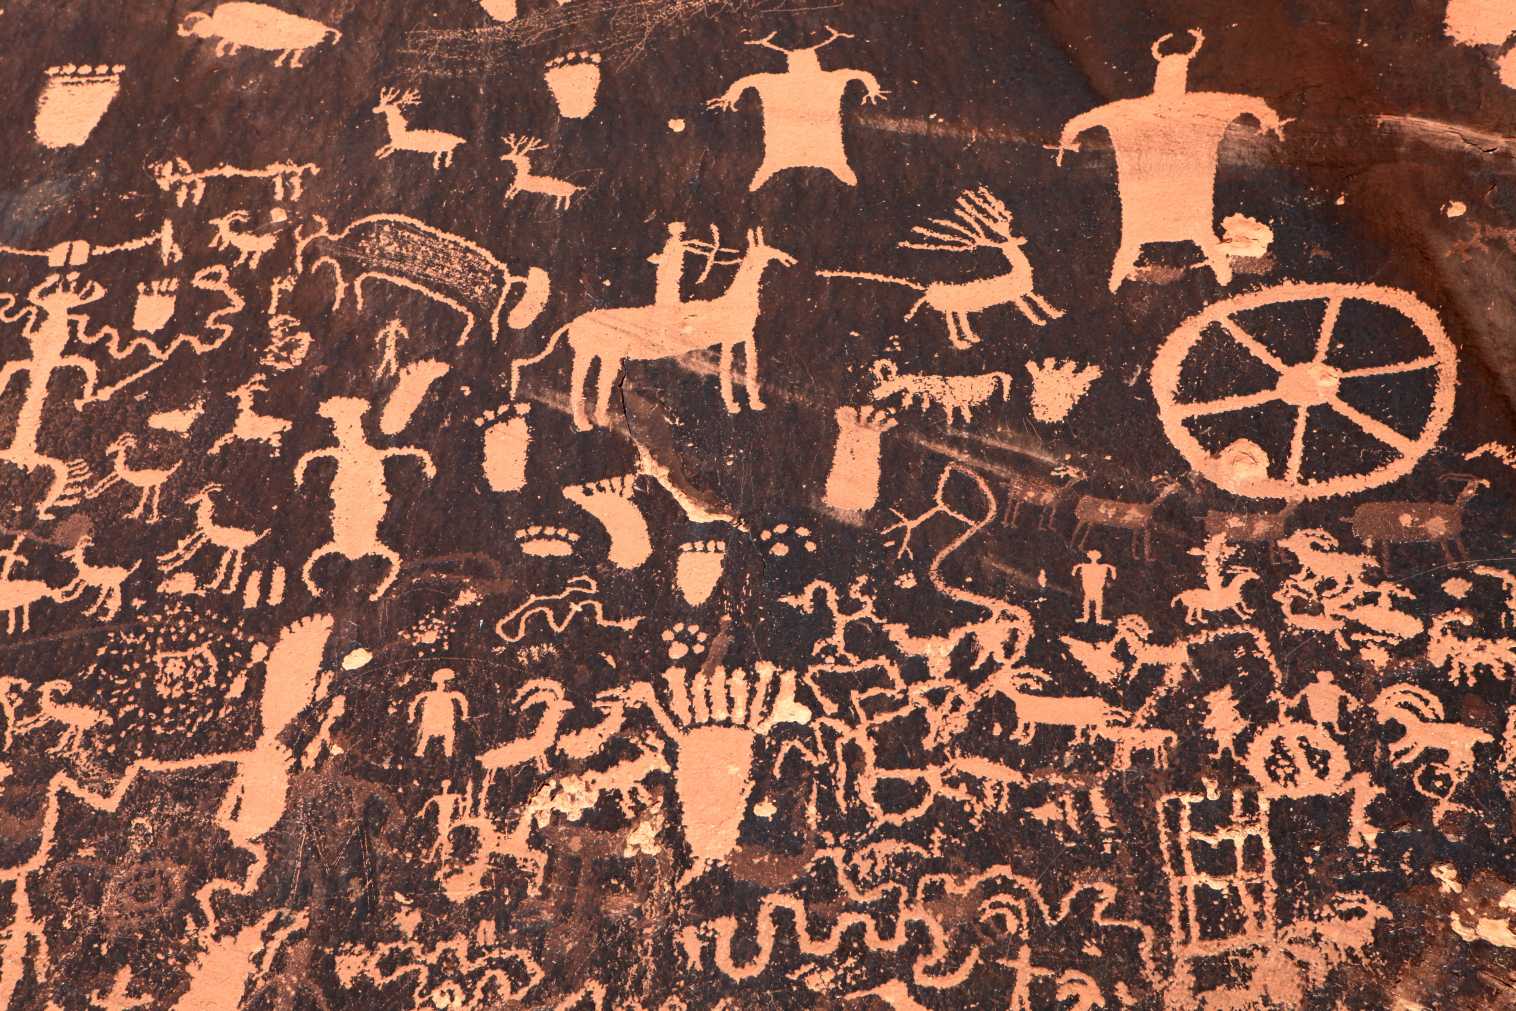 Anasazi petroglyphs ao amin'ny zaridainam-panjakana Newspaper Rock, Utah, Etazonia. Indrisy anefa fa tsy nanana fiteny an-tsoratra ny Anasazi, ary tsy fantatra ny anarana niantsoana ny tenany. © iStock